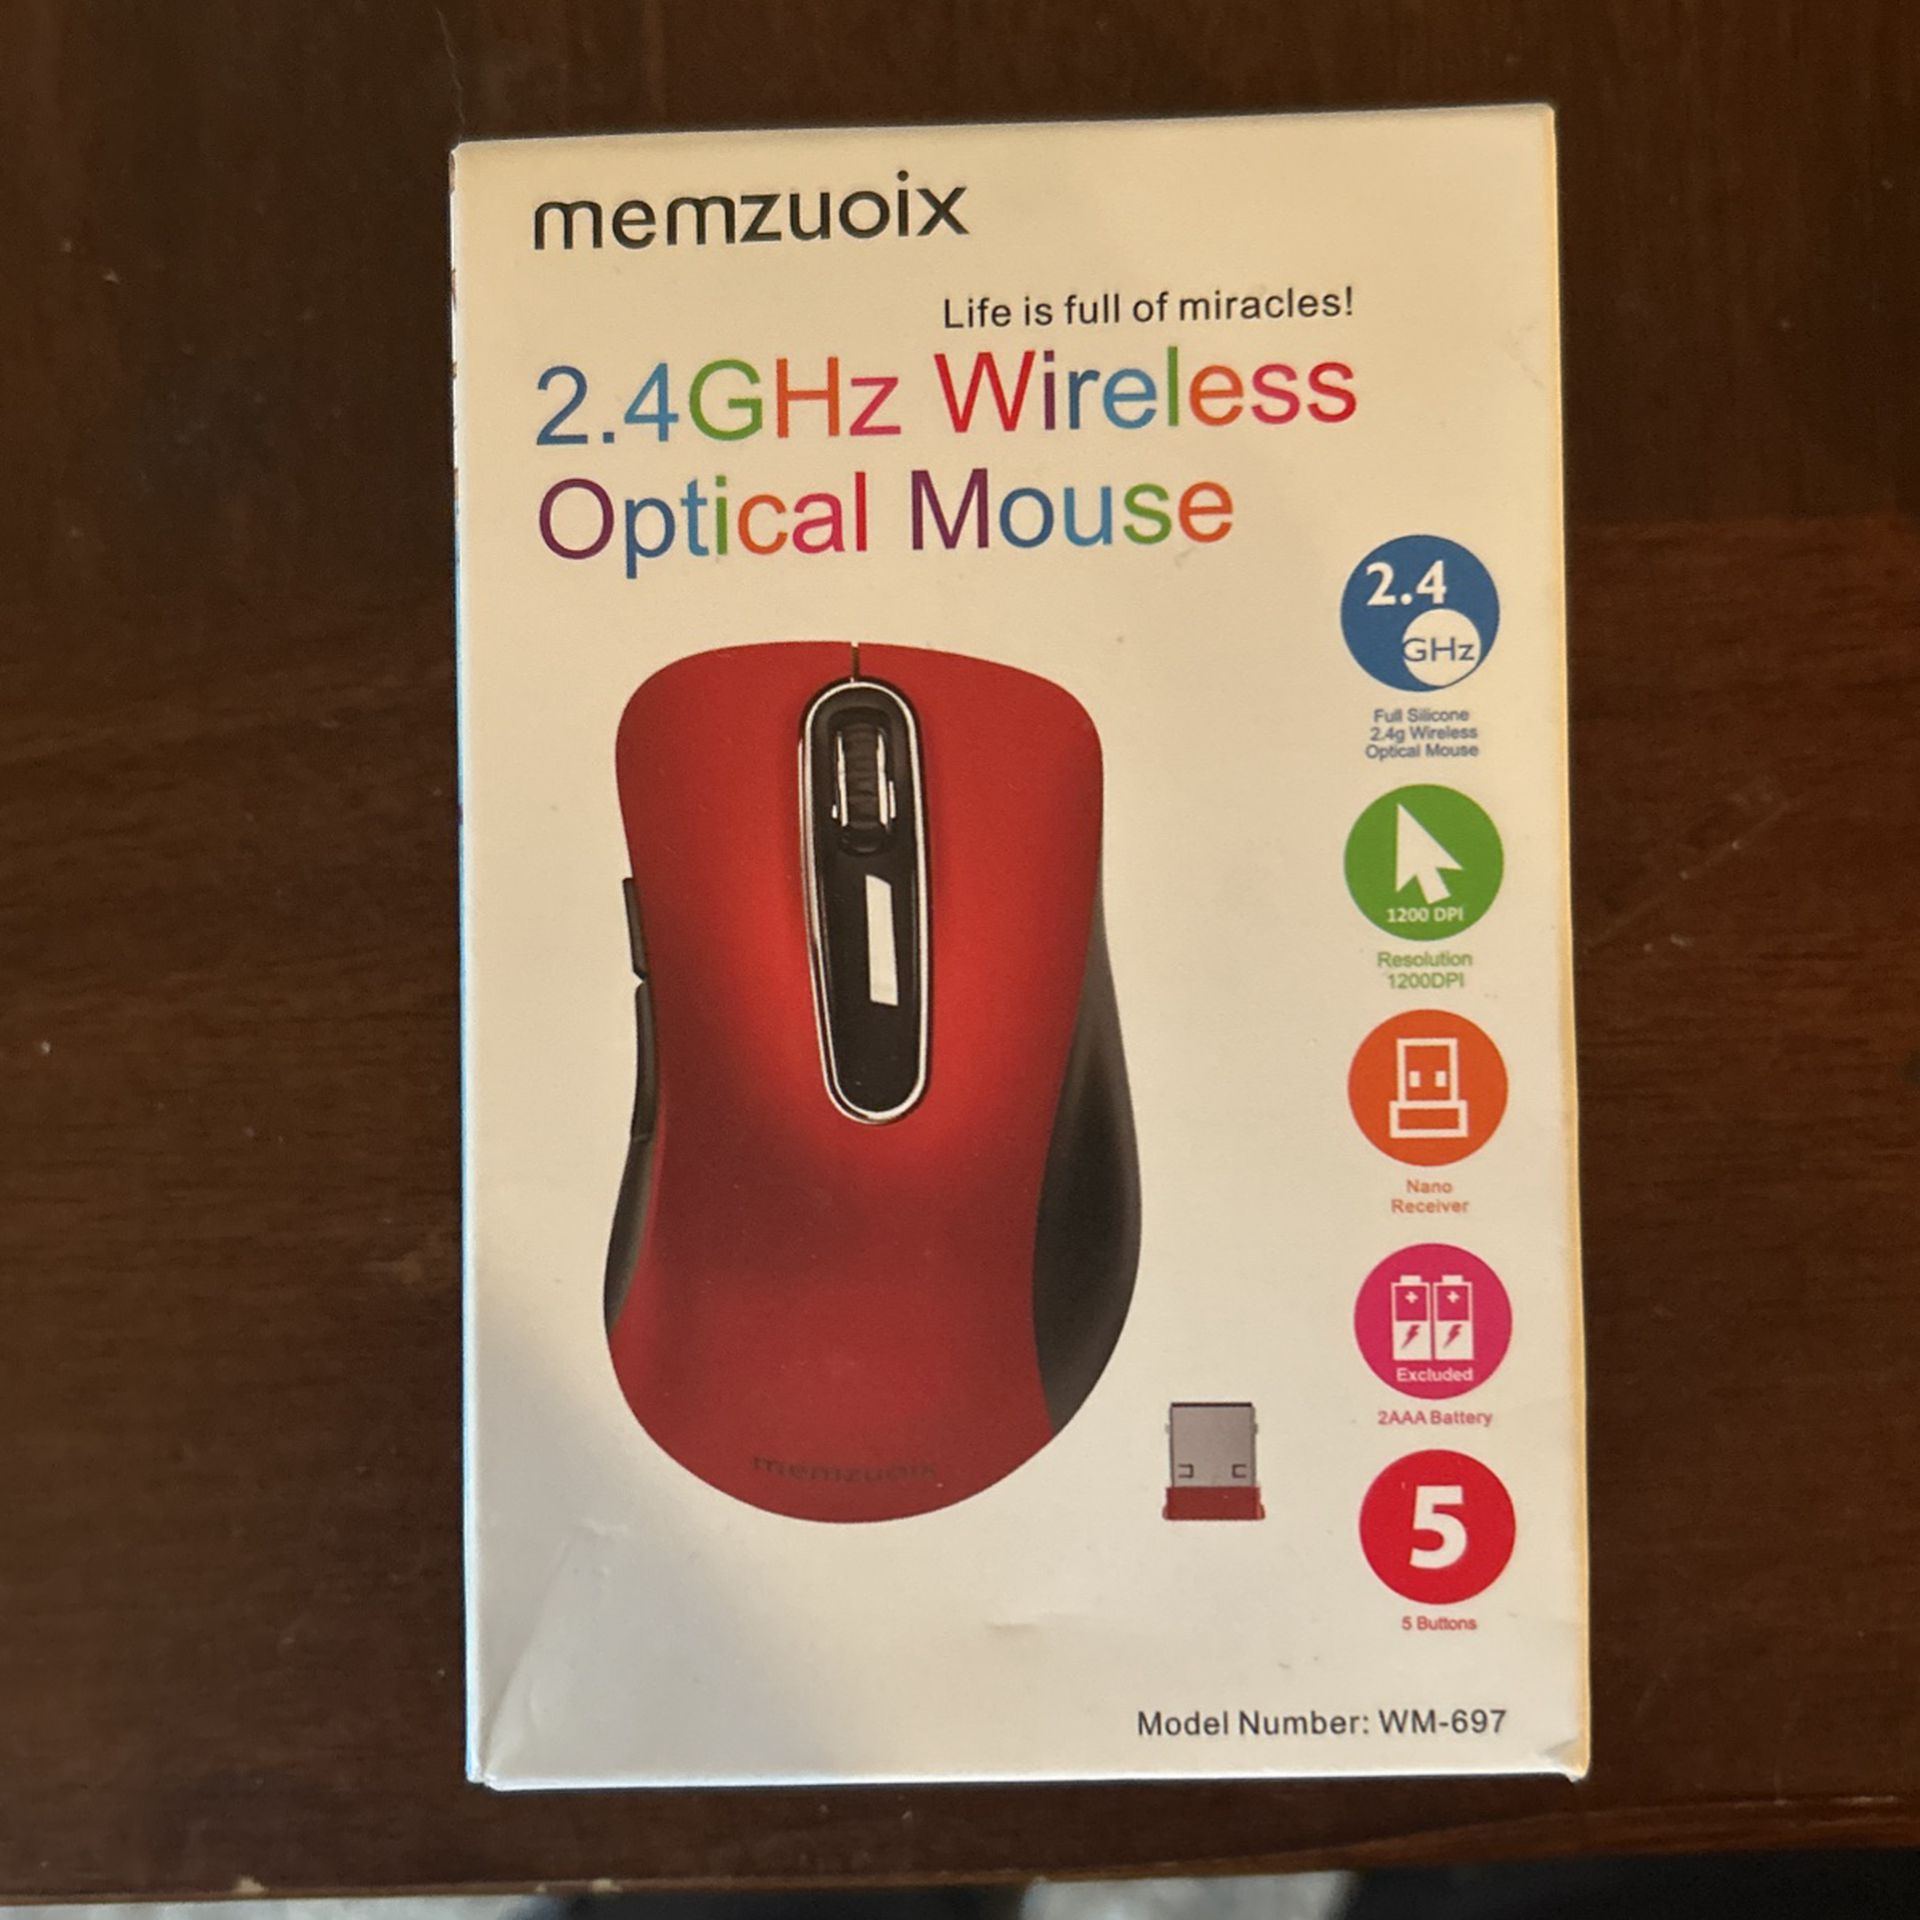 Memzuoix wireless optical mouse